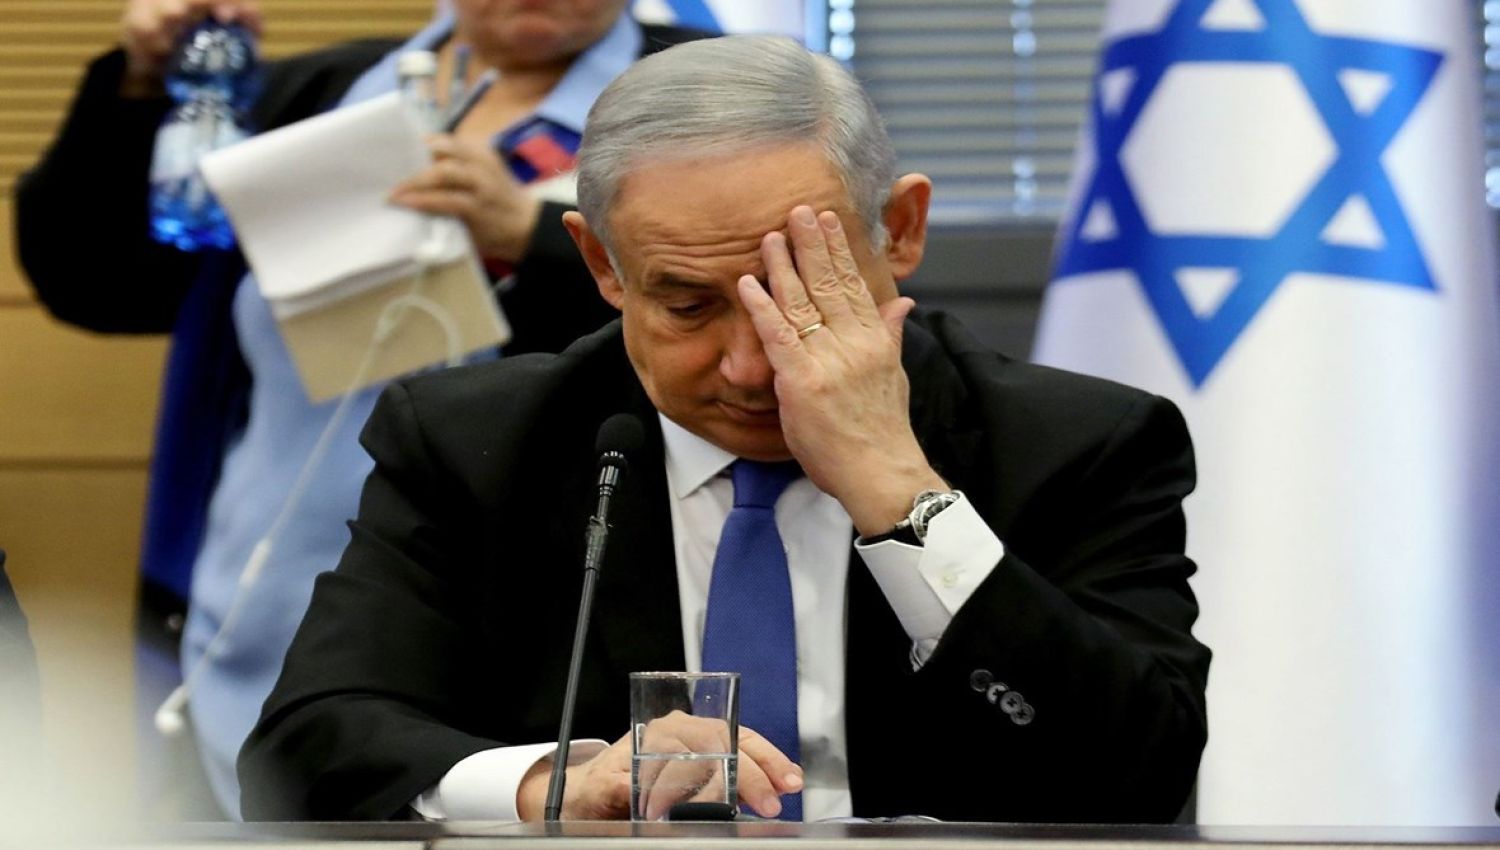 هآرتس: عودة نتنياهو الى رئاسة الحكومة تجر "إسرائيل" الى مخاطر استراتيجية